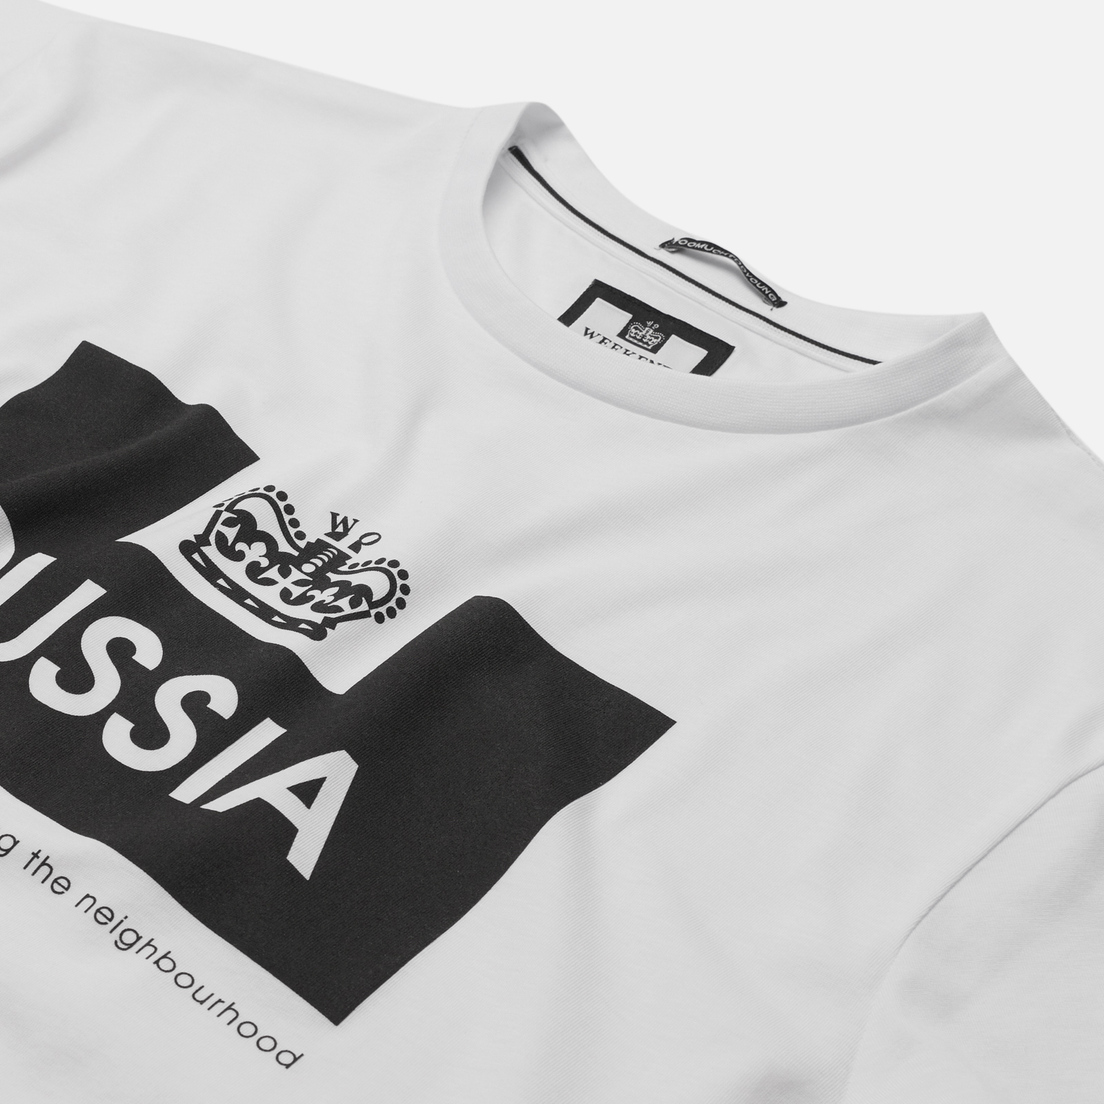 Weekend Offender Мужская футболка City Series 2 Euro Russia